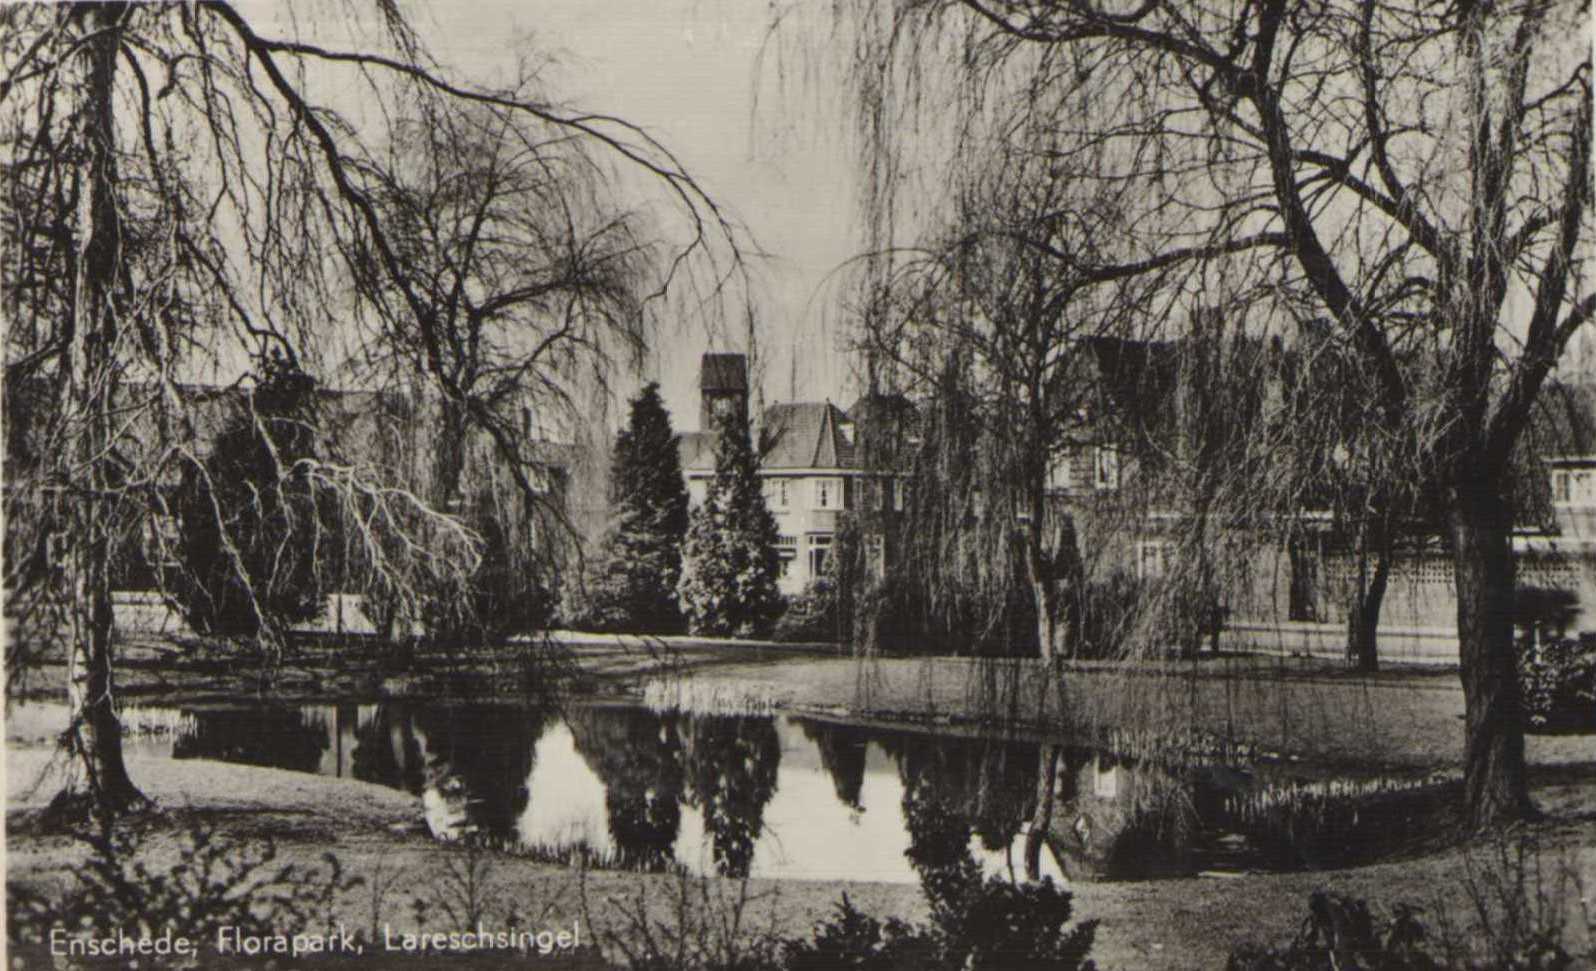 Florapark-lareschsingel-1956.jpg